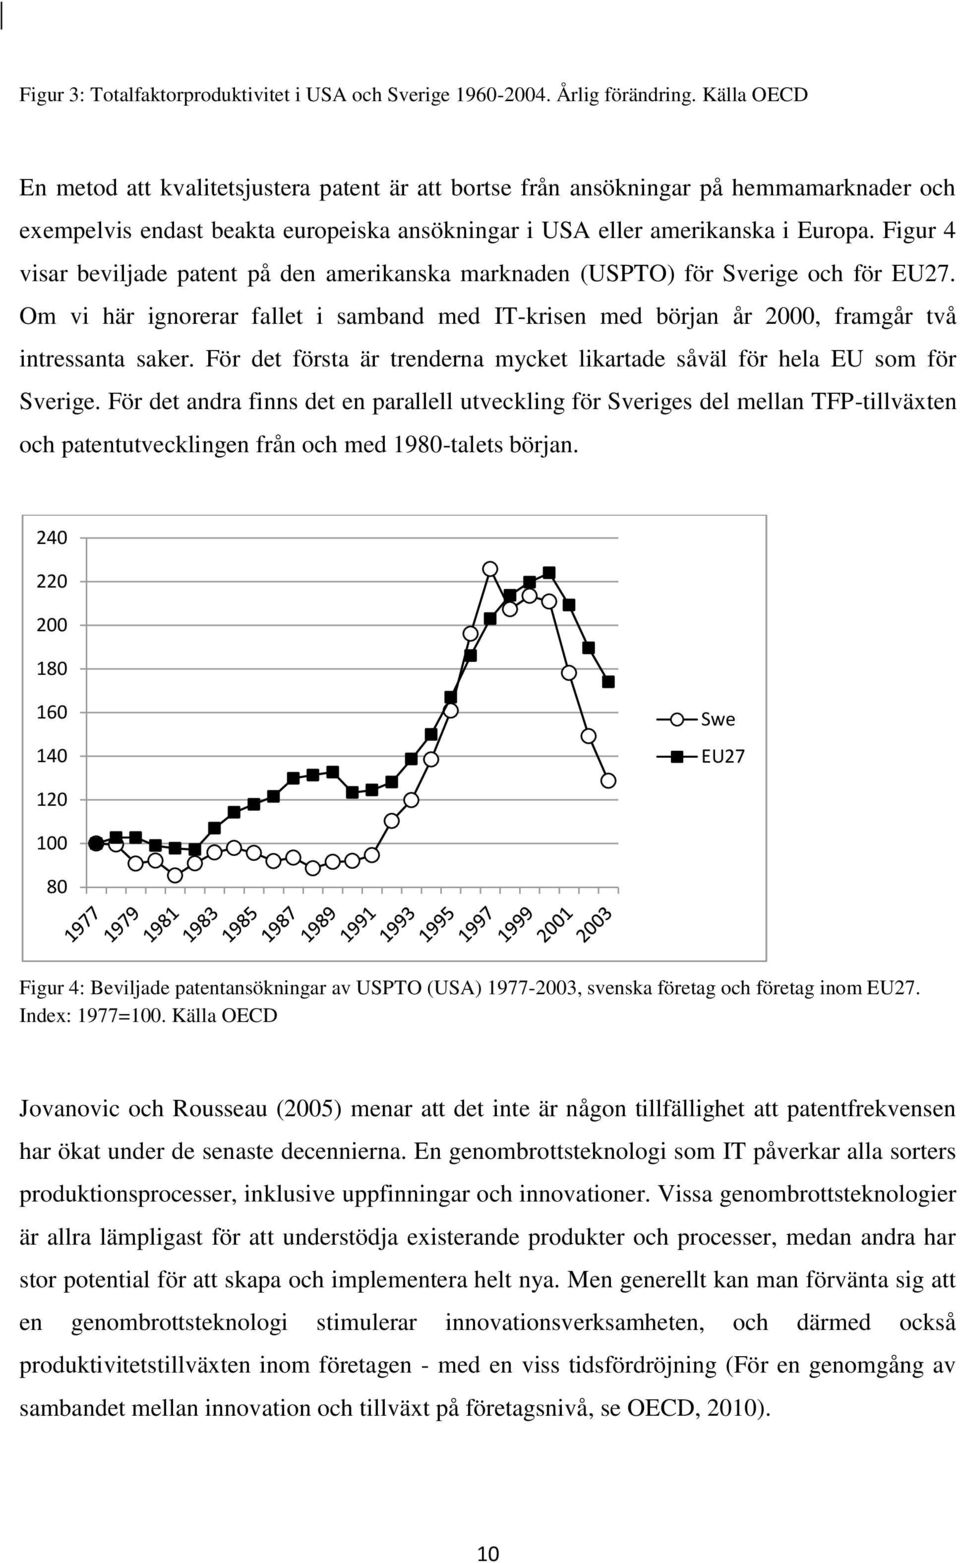 Figur 4 visar beviljade patent på den amerikanska marknaden (USPTO) för Sverige och för EU27. Om vi här ignorerar fallet i samband med IT-krisen med början år 2000, framgår två intressanta saker.